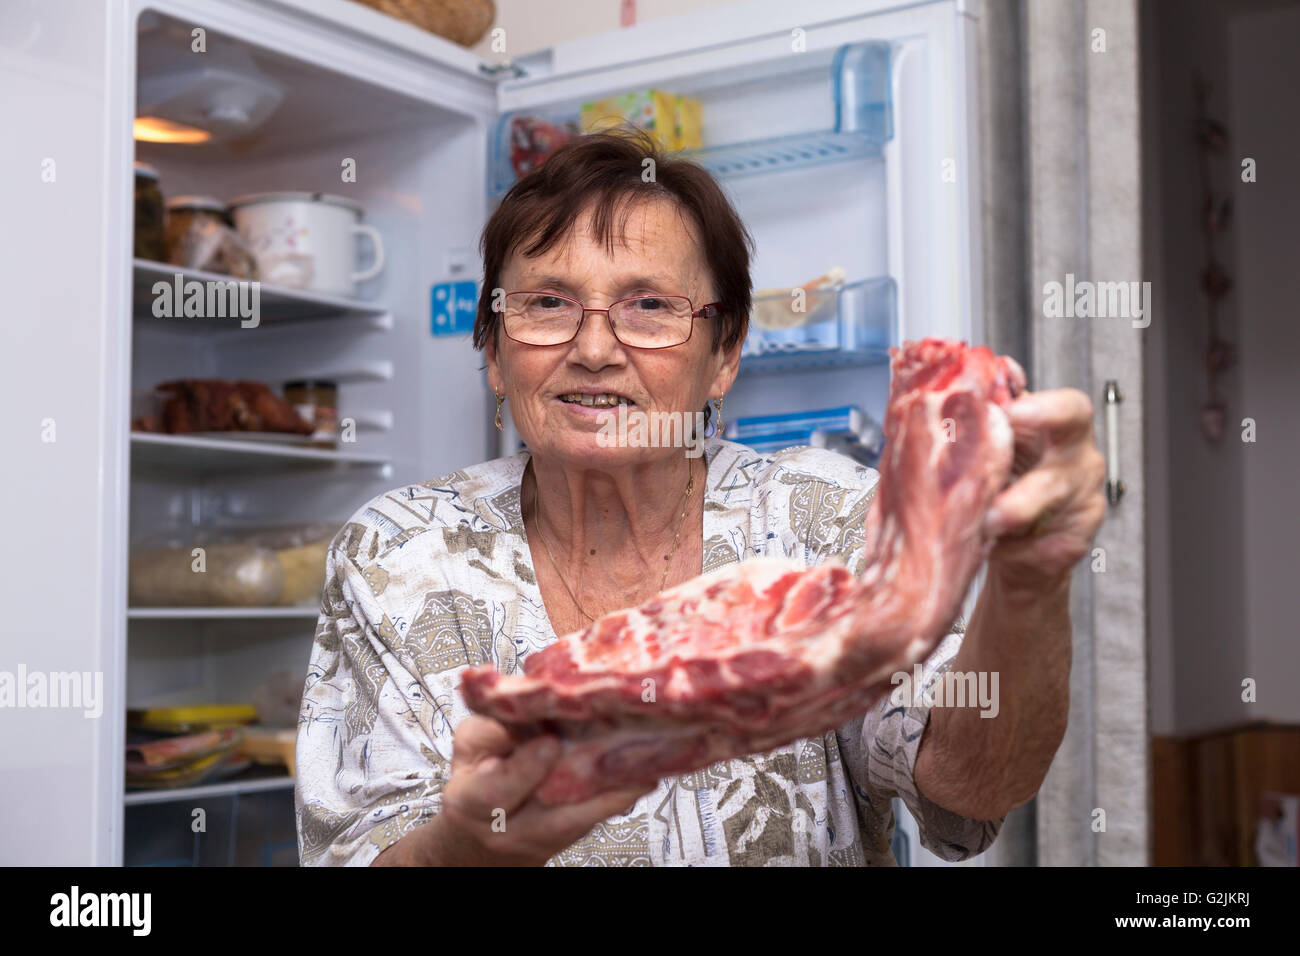 Glücklich senior Frau hält rohe Schweinerippchen vor den offenen Kühlschrank steht in der Küche. Stockfoto